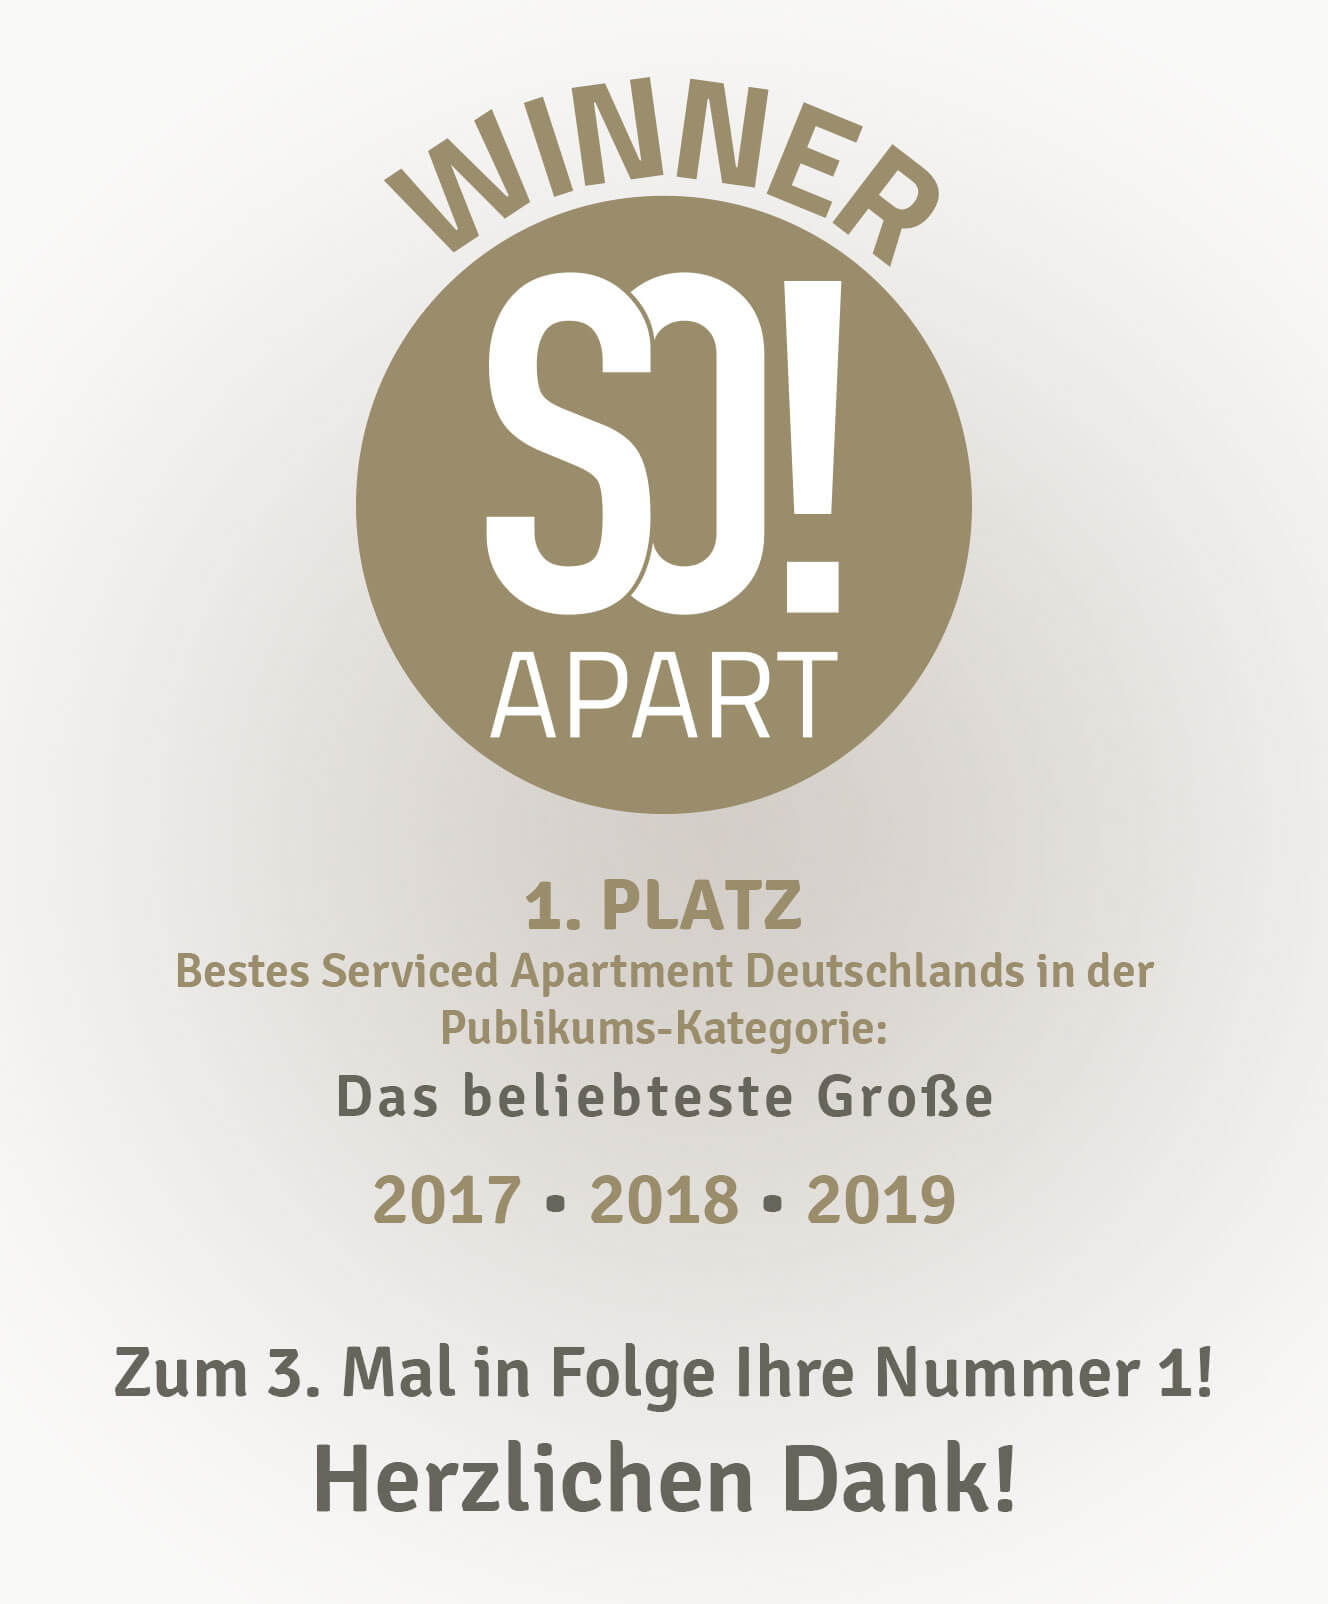 Das beliebteste Serviced Apartments Deutschlands - 1. Platz SO!Apart 2017 2018 2019 